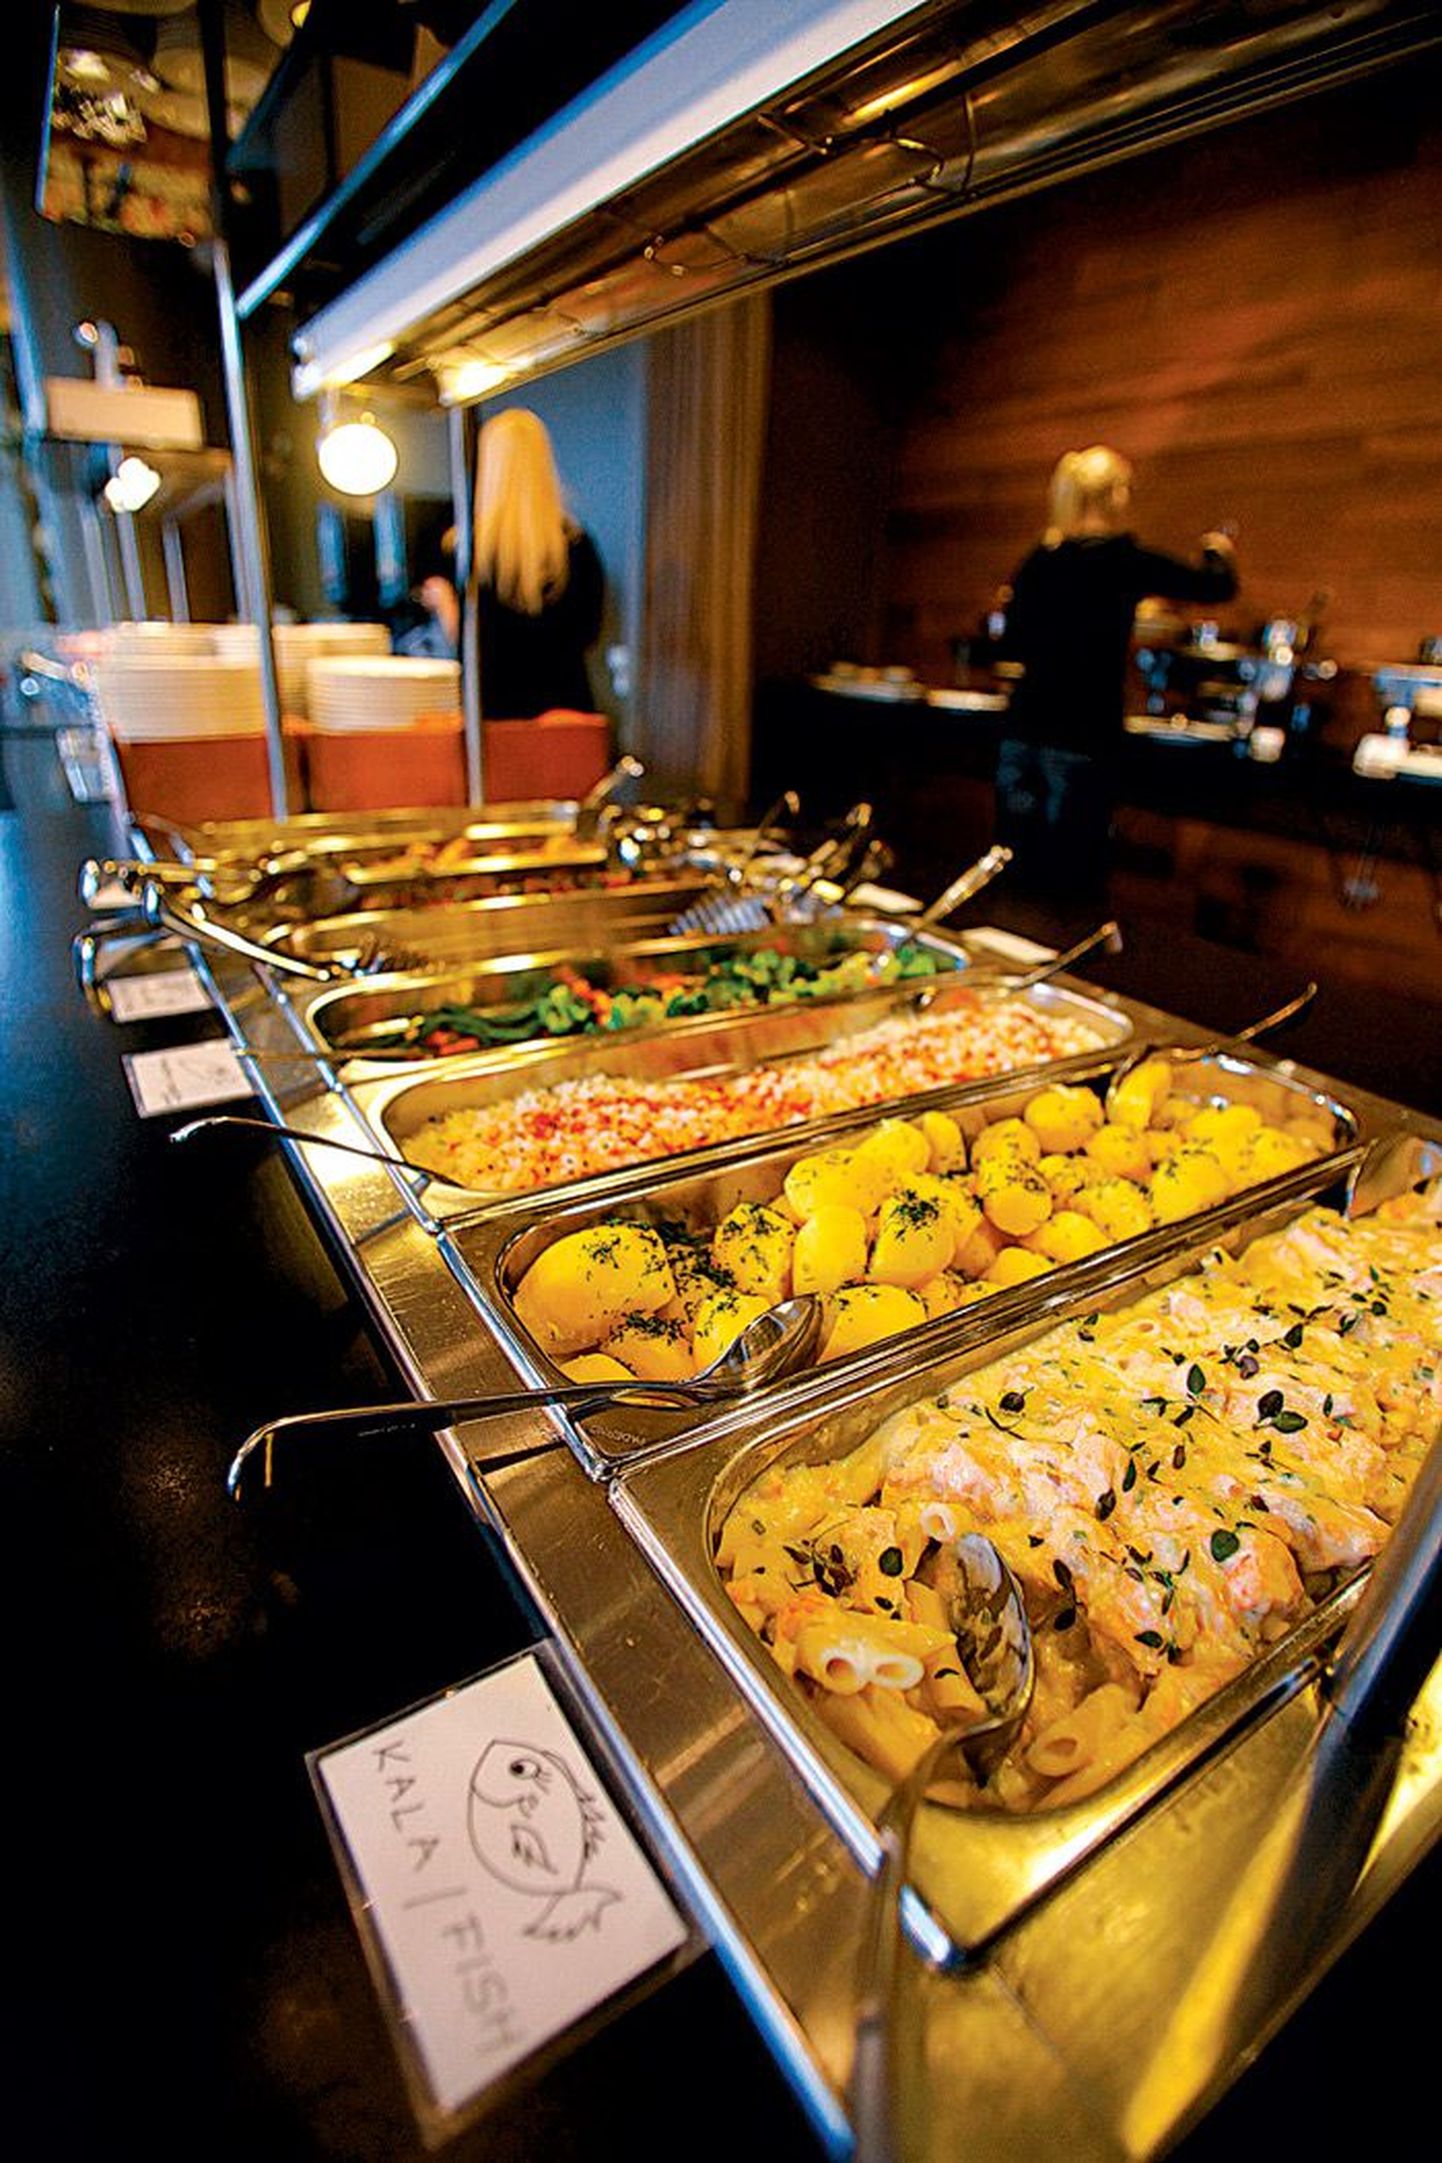 Kesklinna söögikohtade kalleim päevapakkumine on Dorpati restoranis, kus buffet-lõuna maksab 6,3 eurot. Samas on selles hinnas peale praevalikute ka hulk salateid, suppe ja paar magustoitu ning süüa võib nii palju, kui isu jagub.